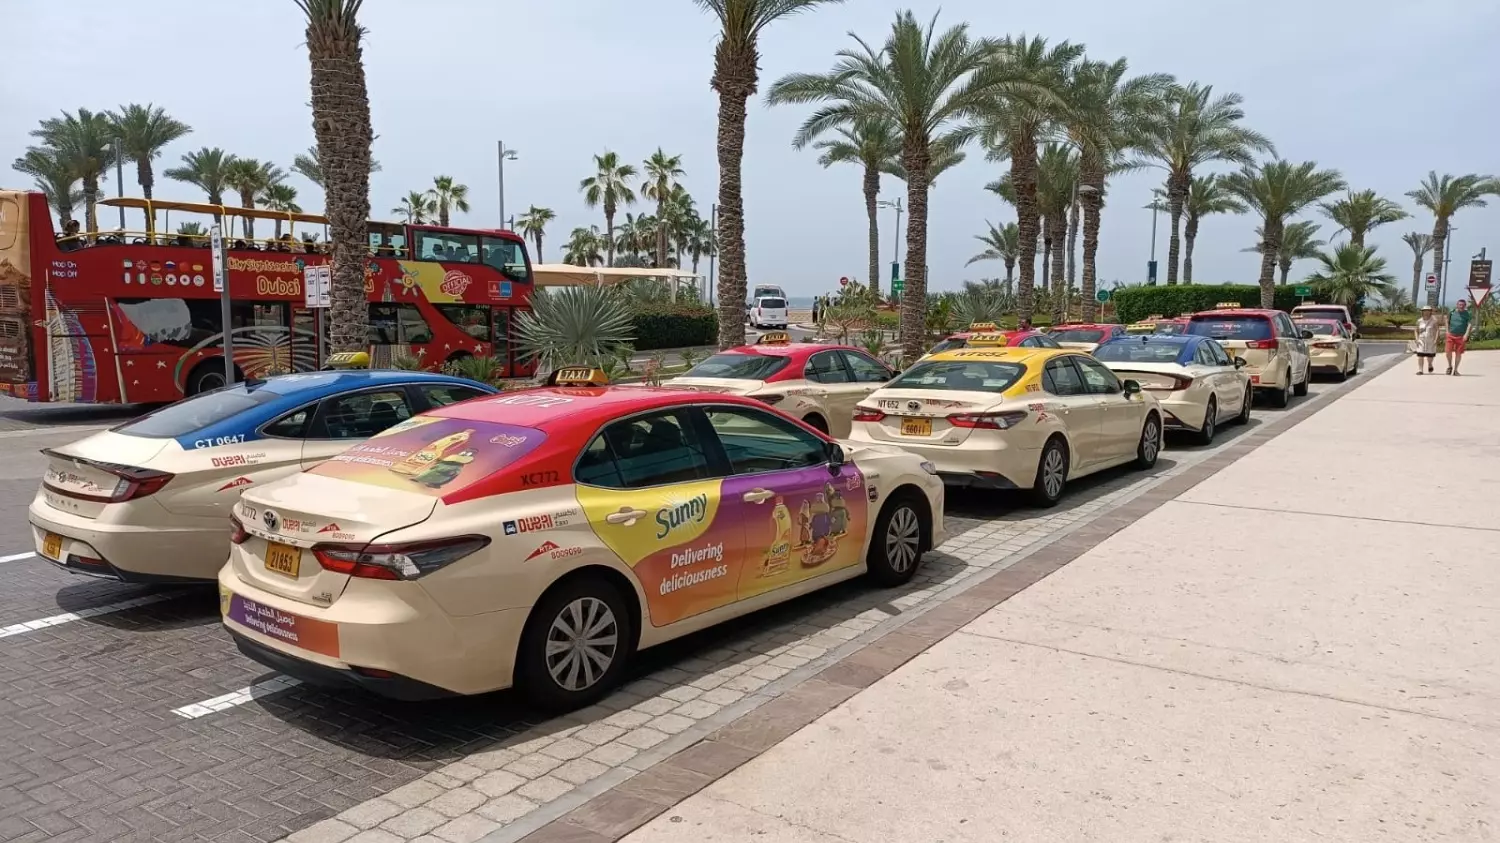 Машины такси в Дубае яркие и красочные